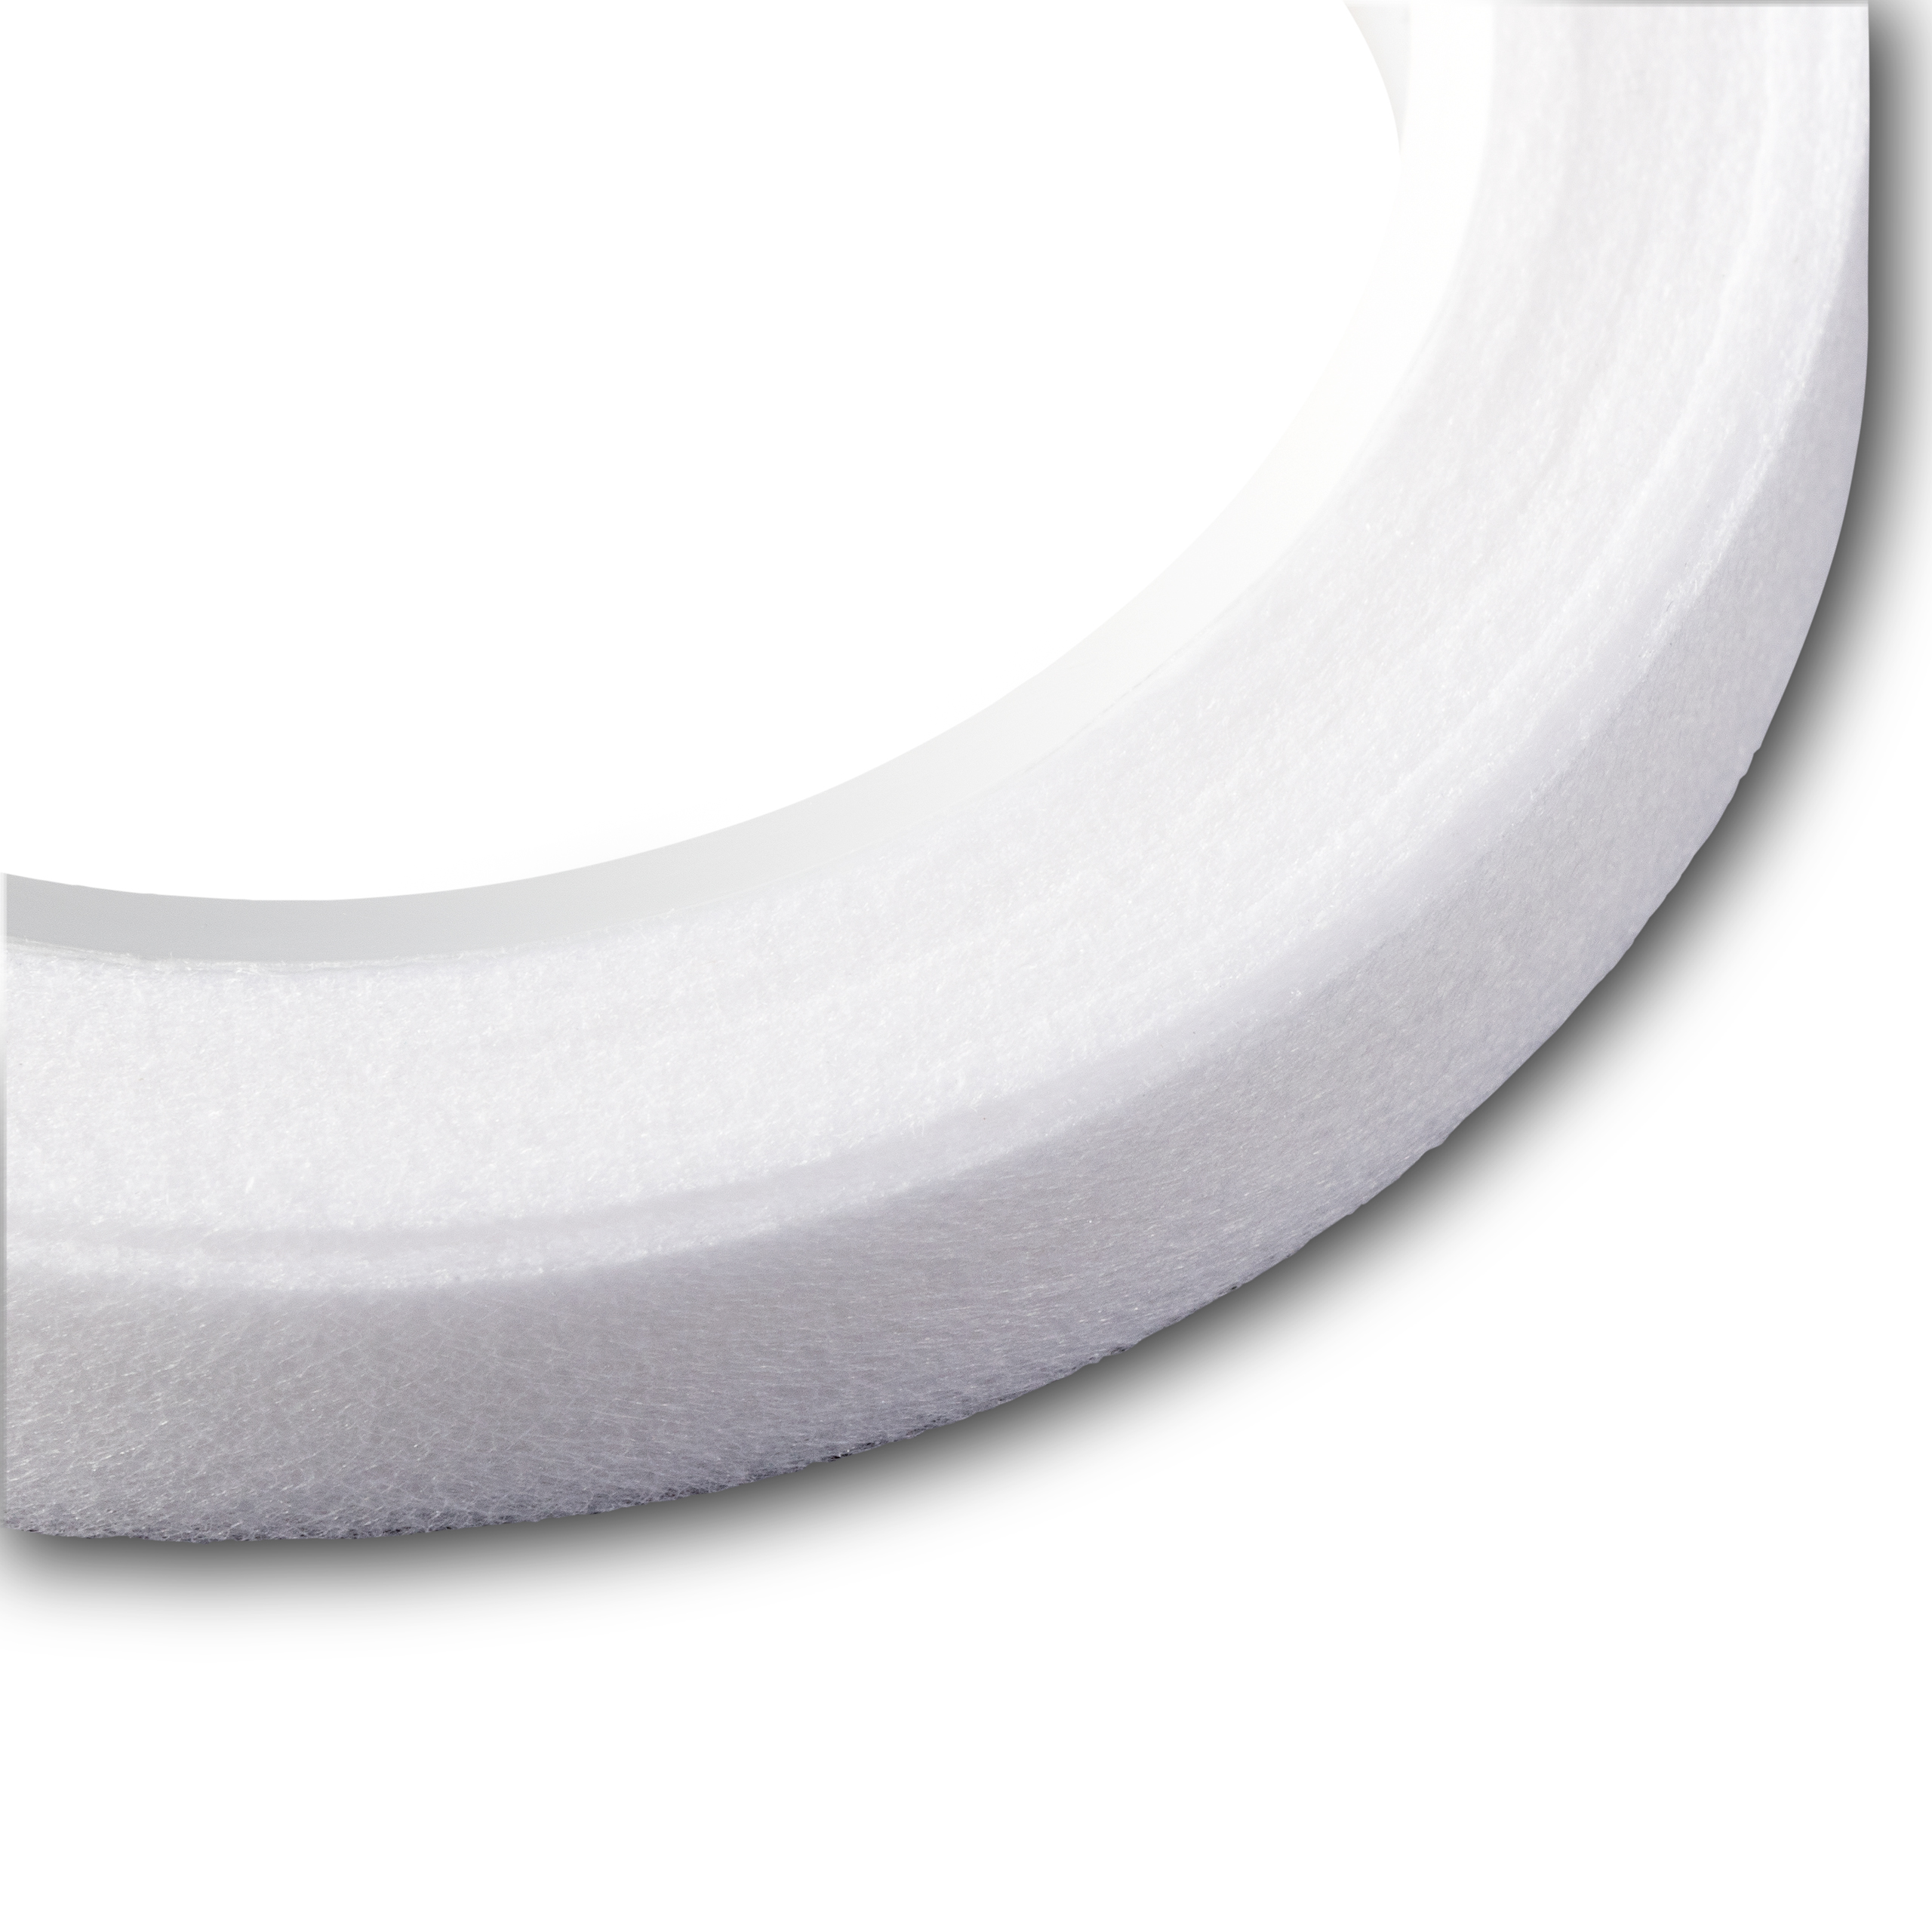 Vlies-Nahtband zum Aufbügeln 10 mm weiß, 10 m 